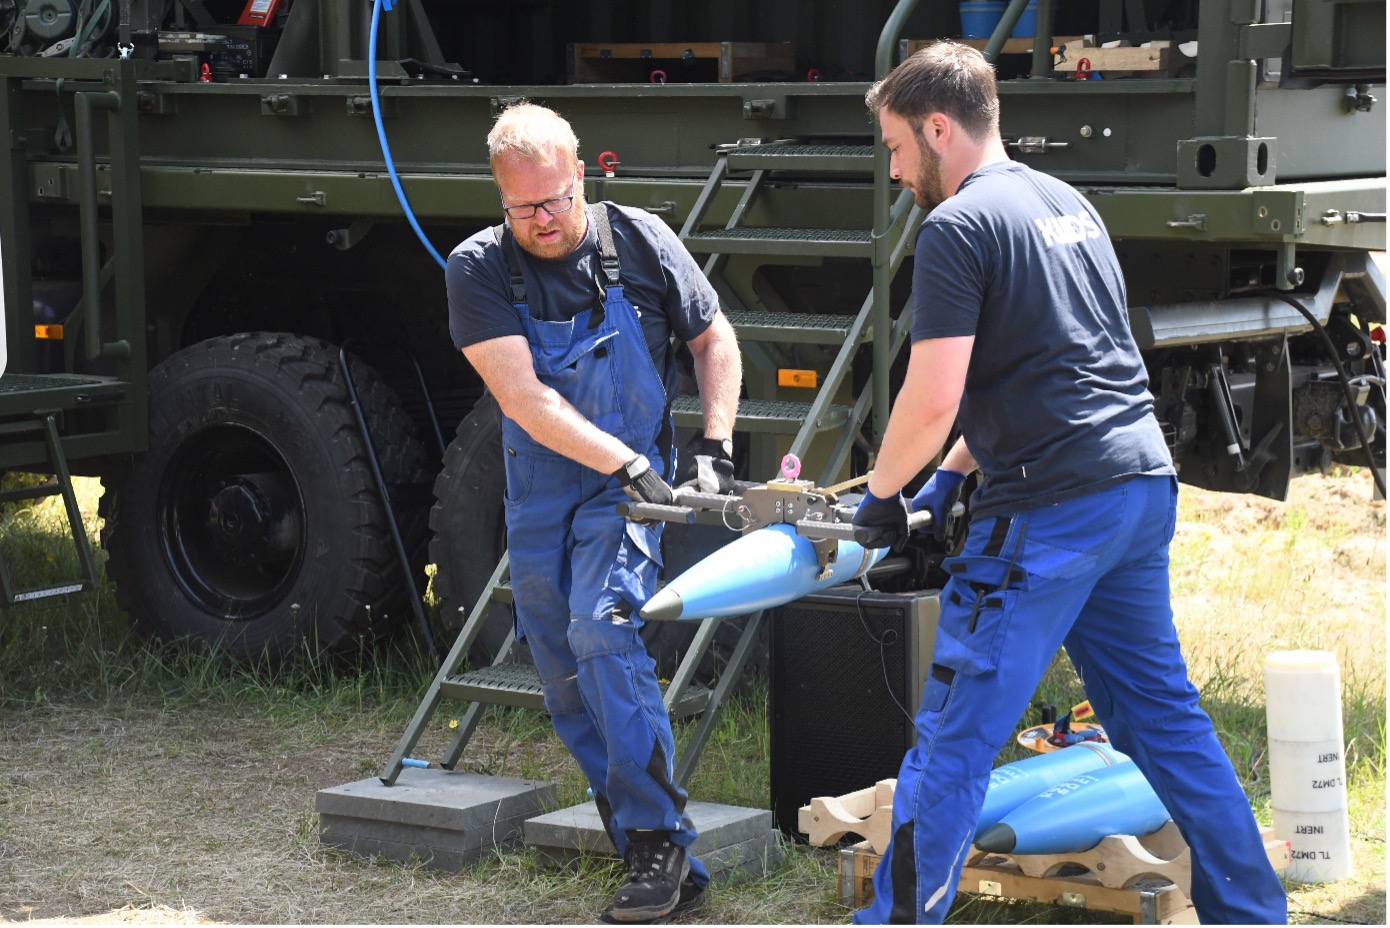 Modernes Aufmunitionierungskonzept für Artilleriegeschütze: Zwei Mitarbeiter heben eine Granate mit der Beladezange. Dieses soll die Personen schützen und den Transport einfacher und sicherer gestalten.